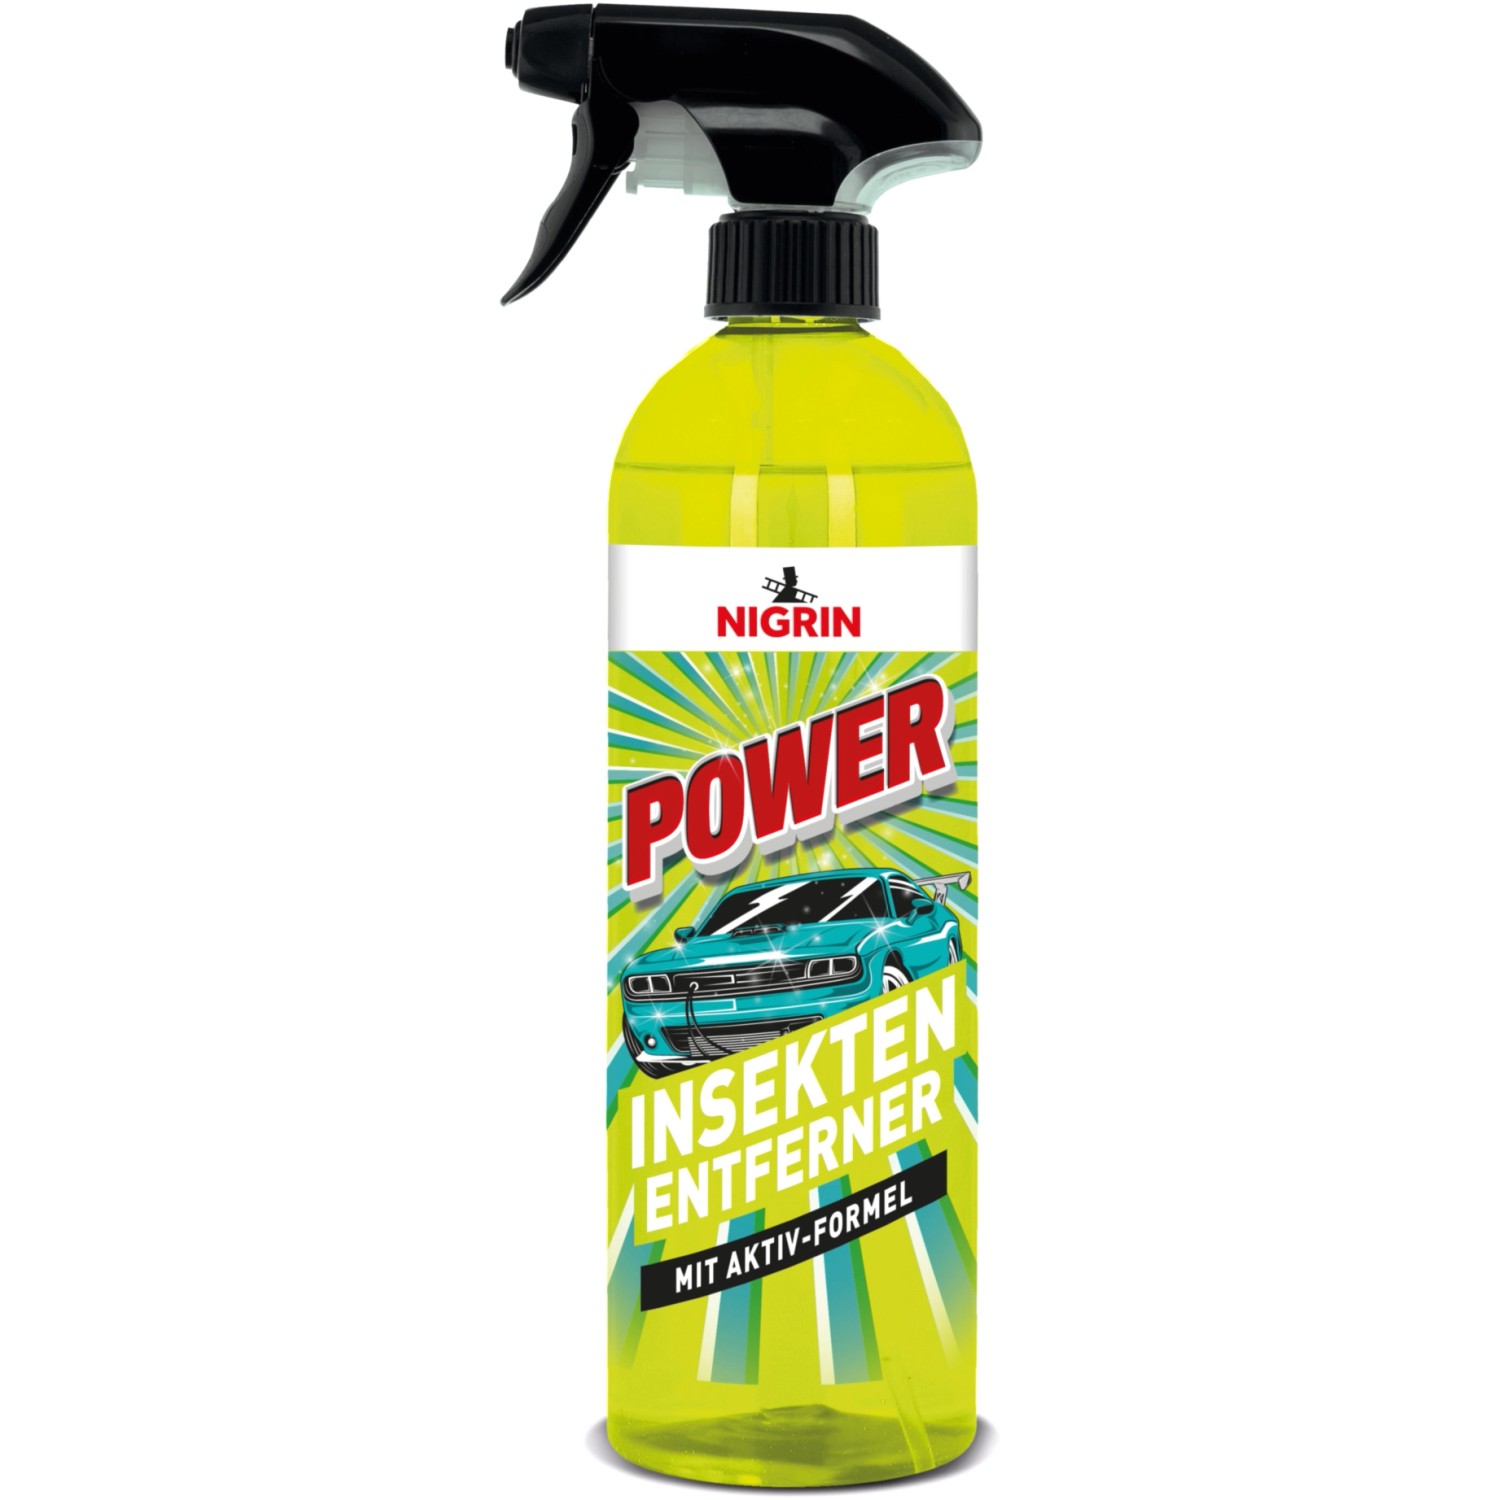 Nigrin Insekten-Entferner Power 750 ml